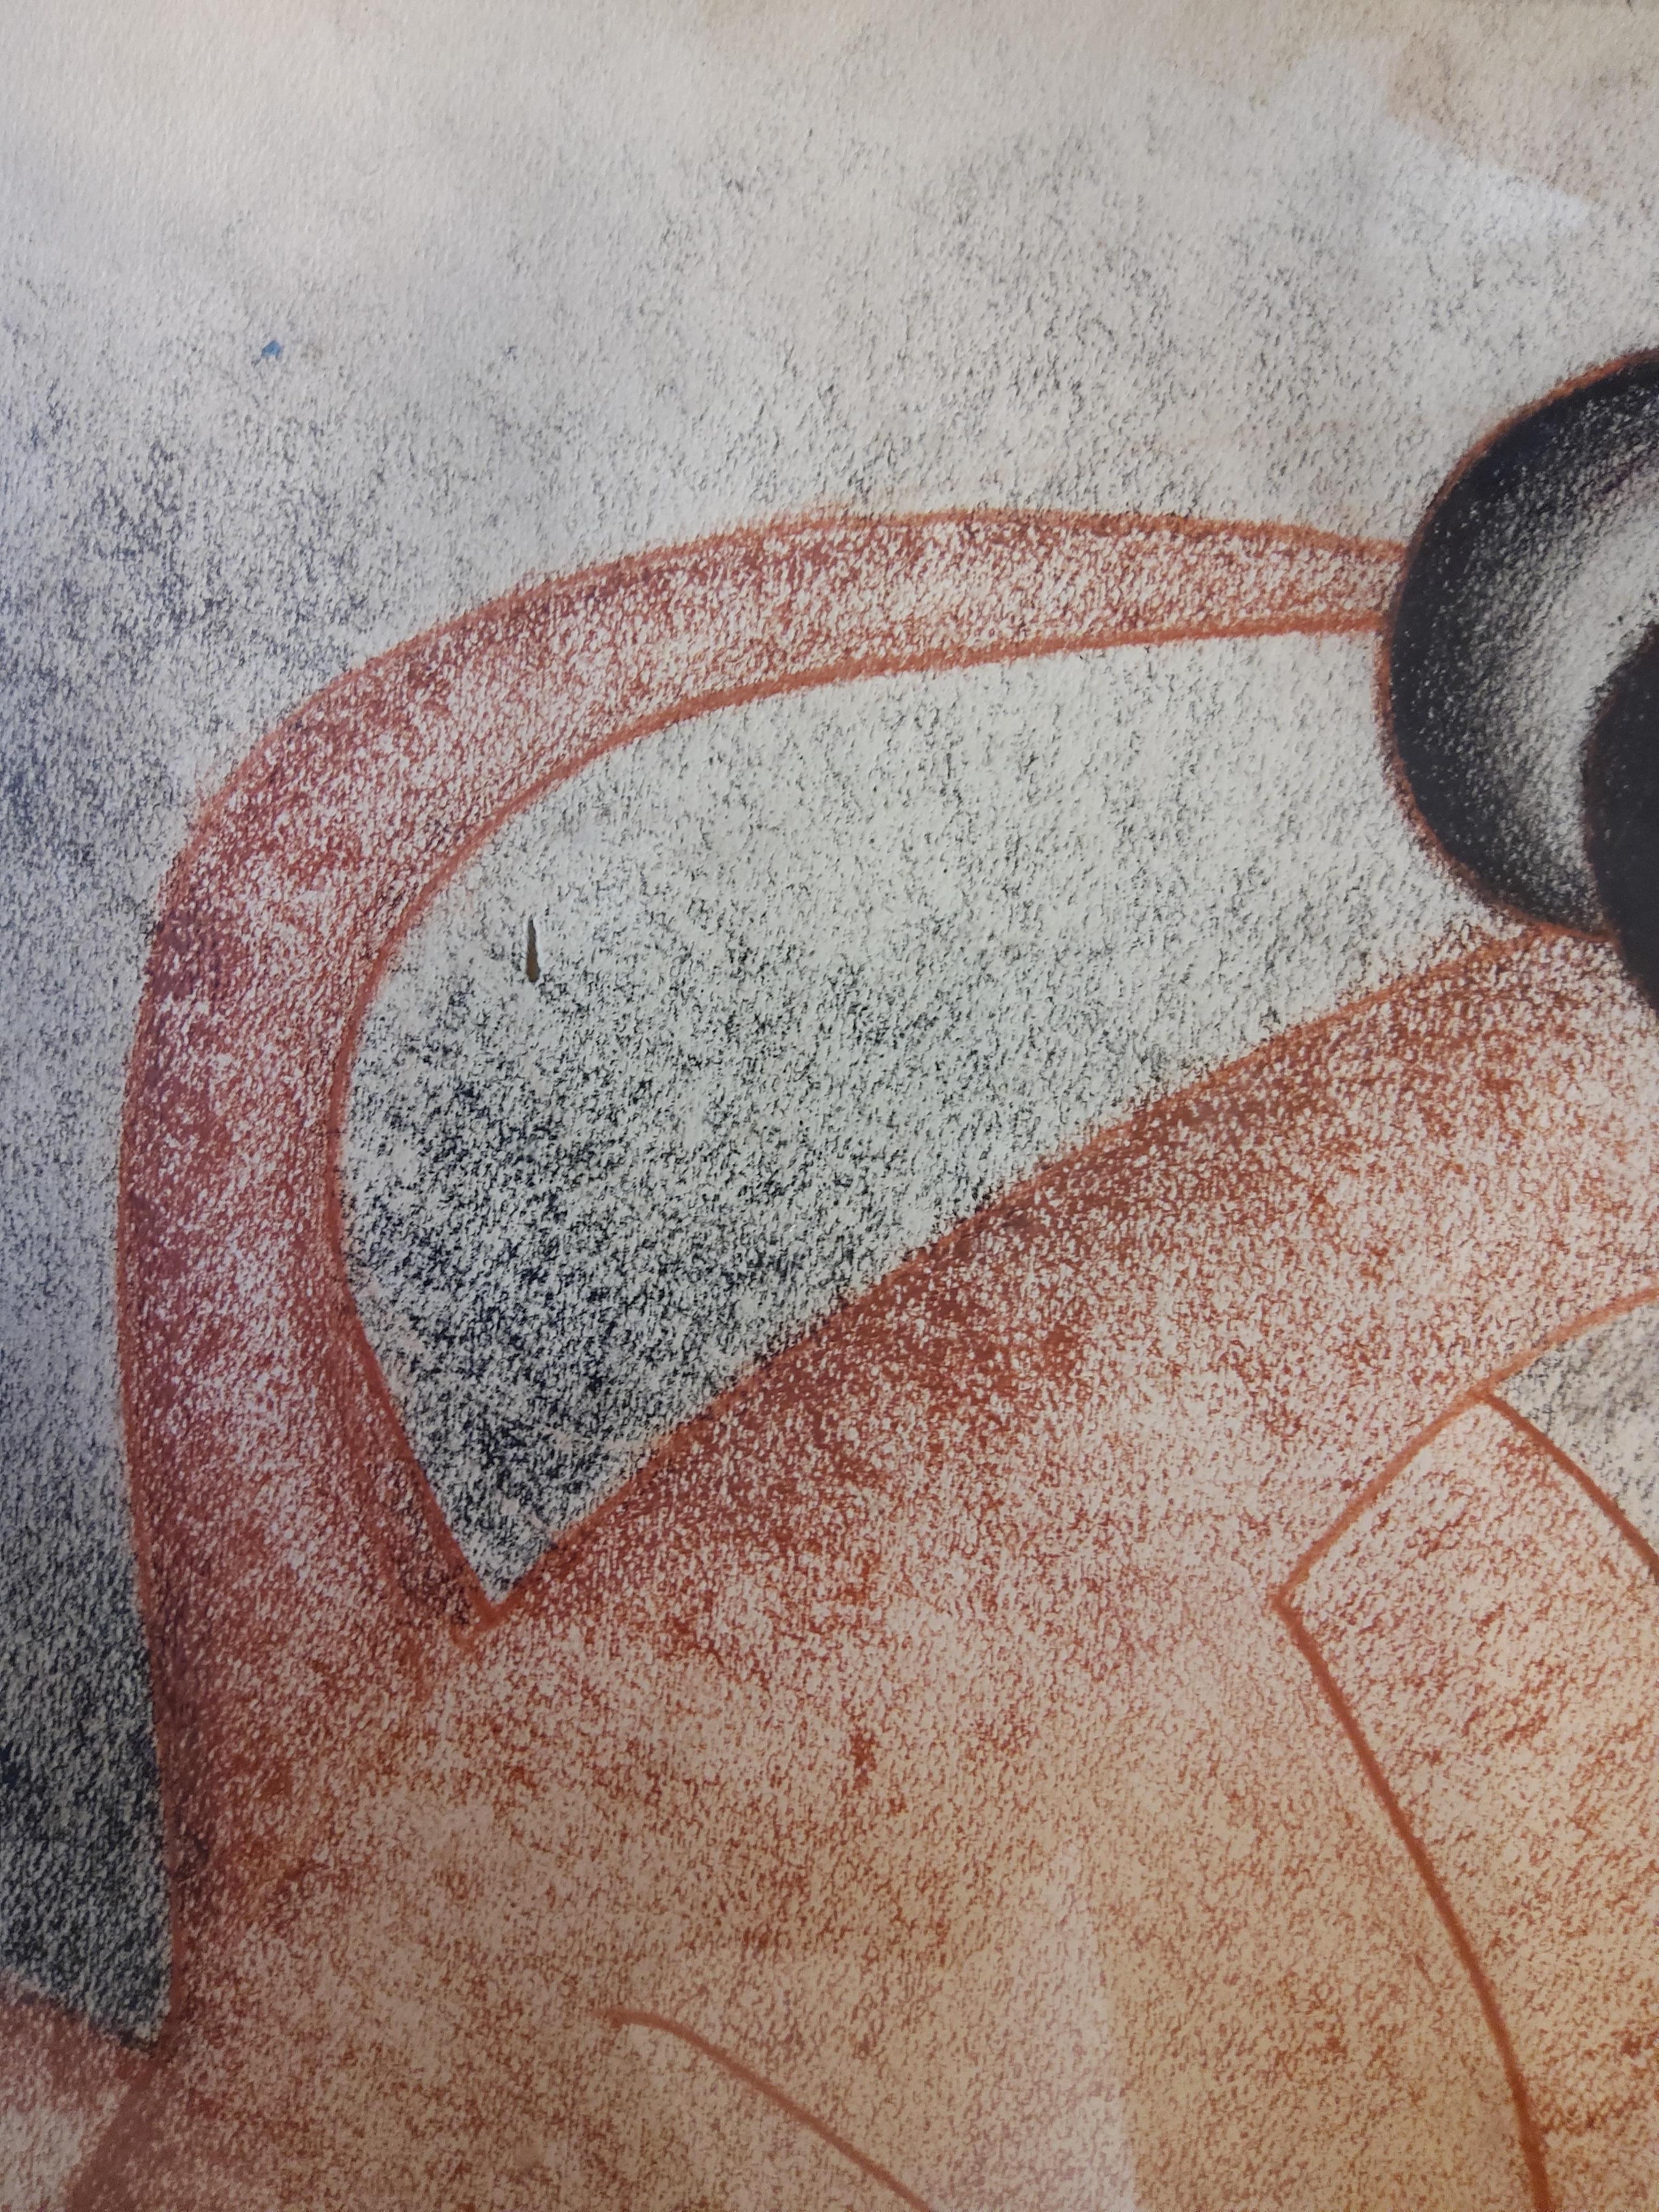 Dessin de nu féminin zoomorphe stylisé d'influence Picasso, crayon à l'huile sur papier, École de Paris, signé et daté 1963. L'œuvre est présentée dans un cadre chromé d'époque.

Interprétation élégante et intéressante, avec une belle ligne, dans ce